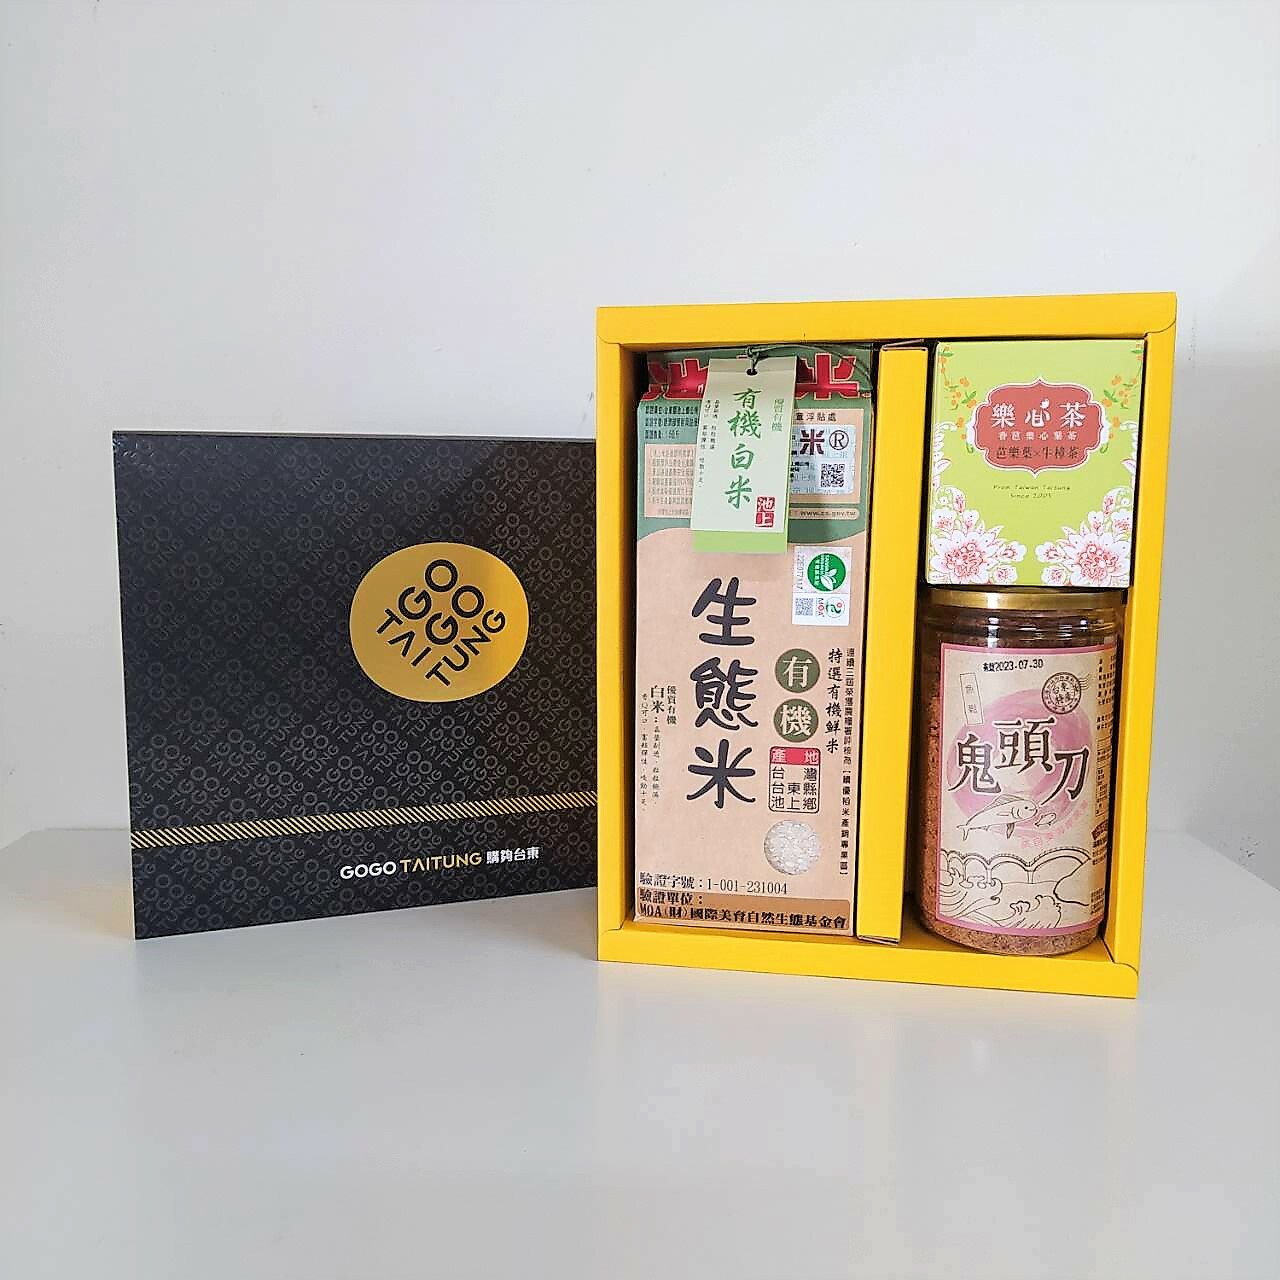 【限定禮盒】鄉情禮盒-有機生態白米+鬼頭刀魚鬆+香芭葉茶